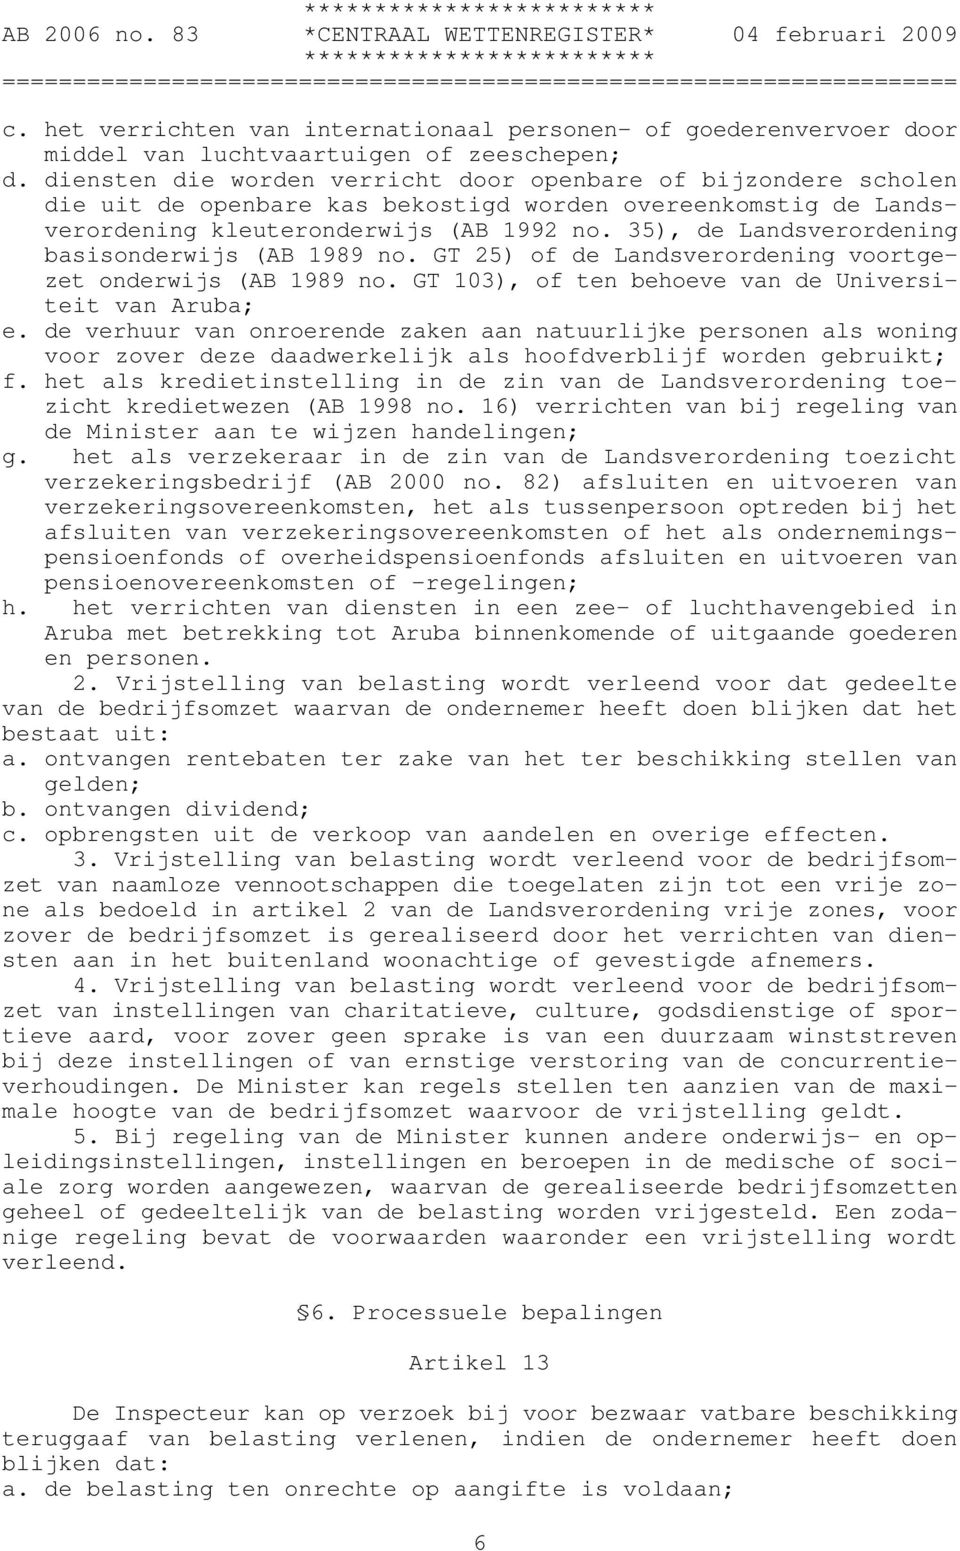 35), de Landsverordening basisonderwijs (AB 1989 no. GT 25) of de Landsverordening voortgezet onderwijs (AB 1989 no. GT 103), of ten behoeve van de Universiteit van Aruba; e.